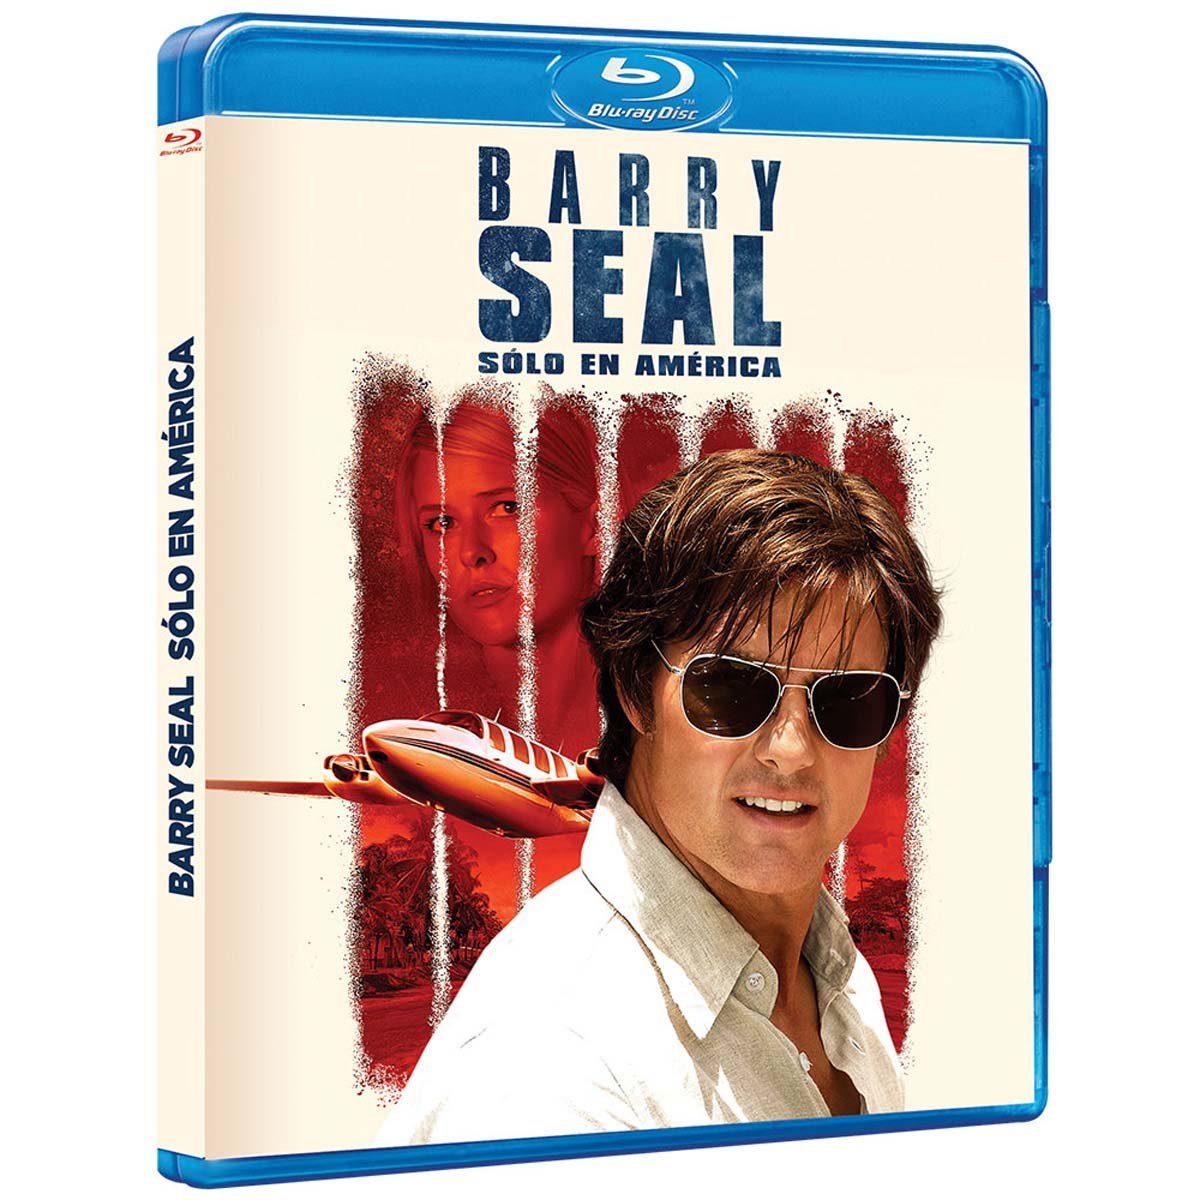 Blu Ray Barry Seal Sólo en América